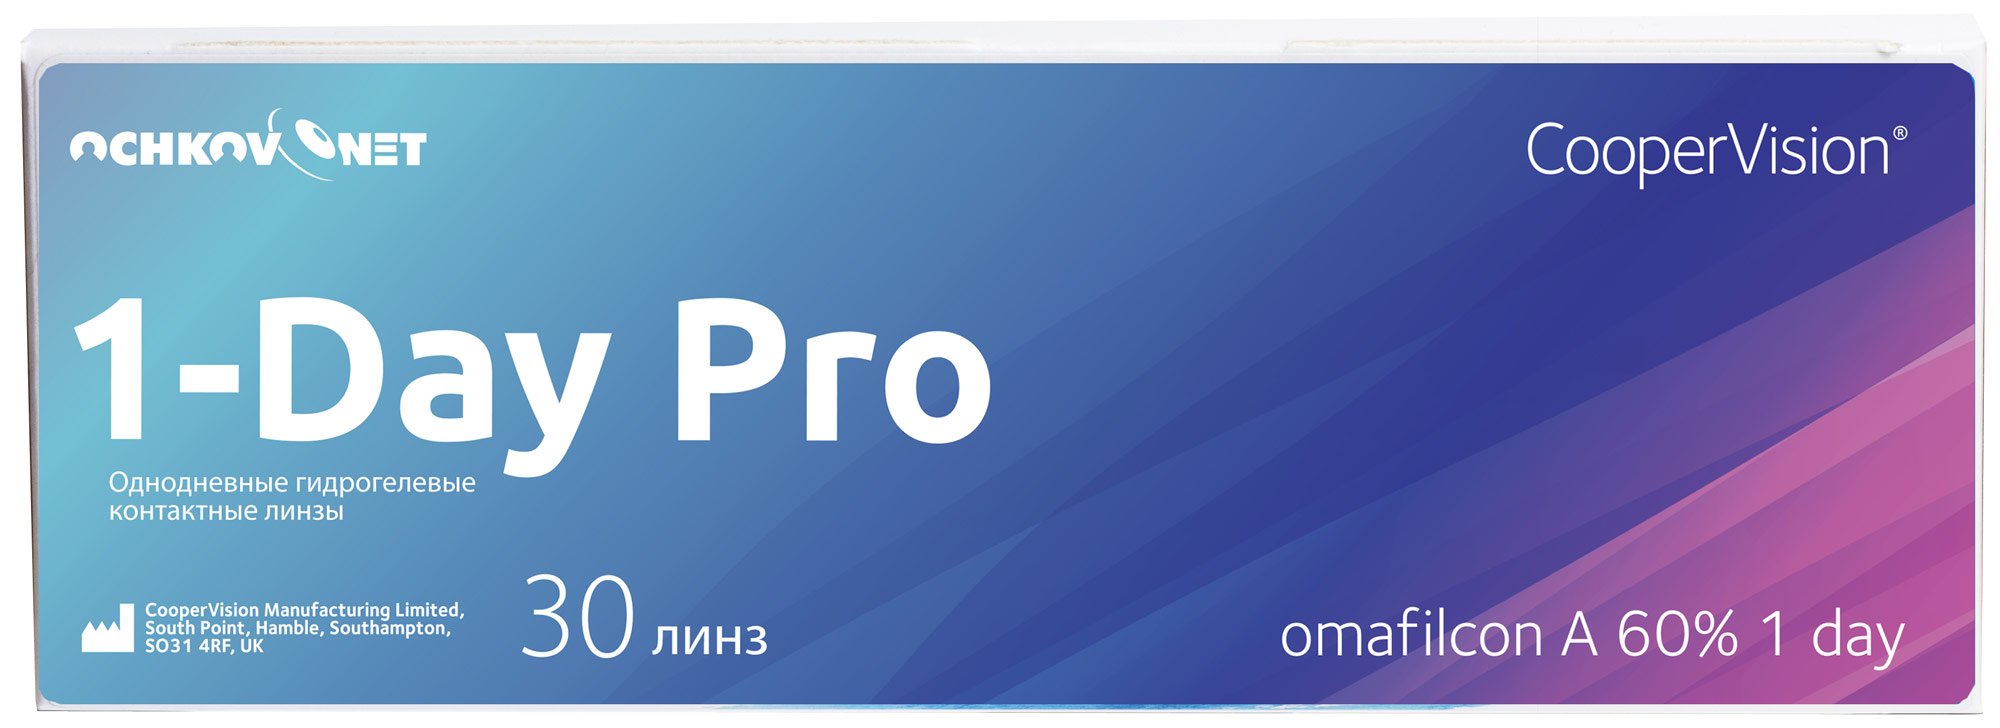 Купить Контактные линзы Ochkov.Net 1-Day Pro 30 линз 8.7, -6